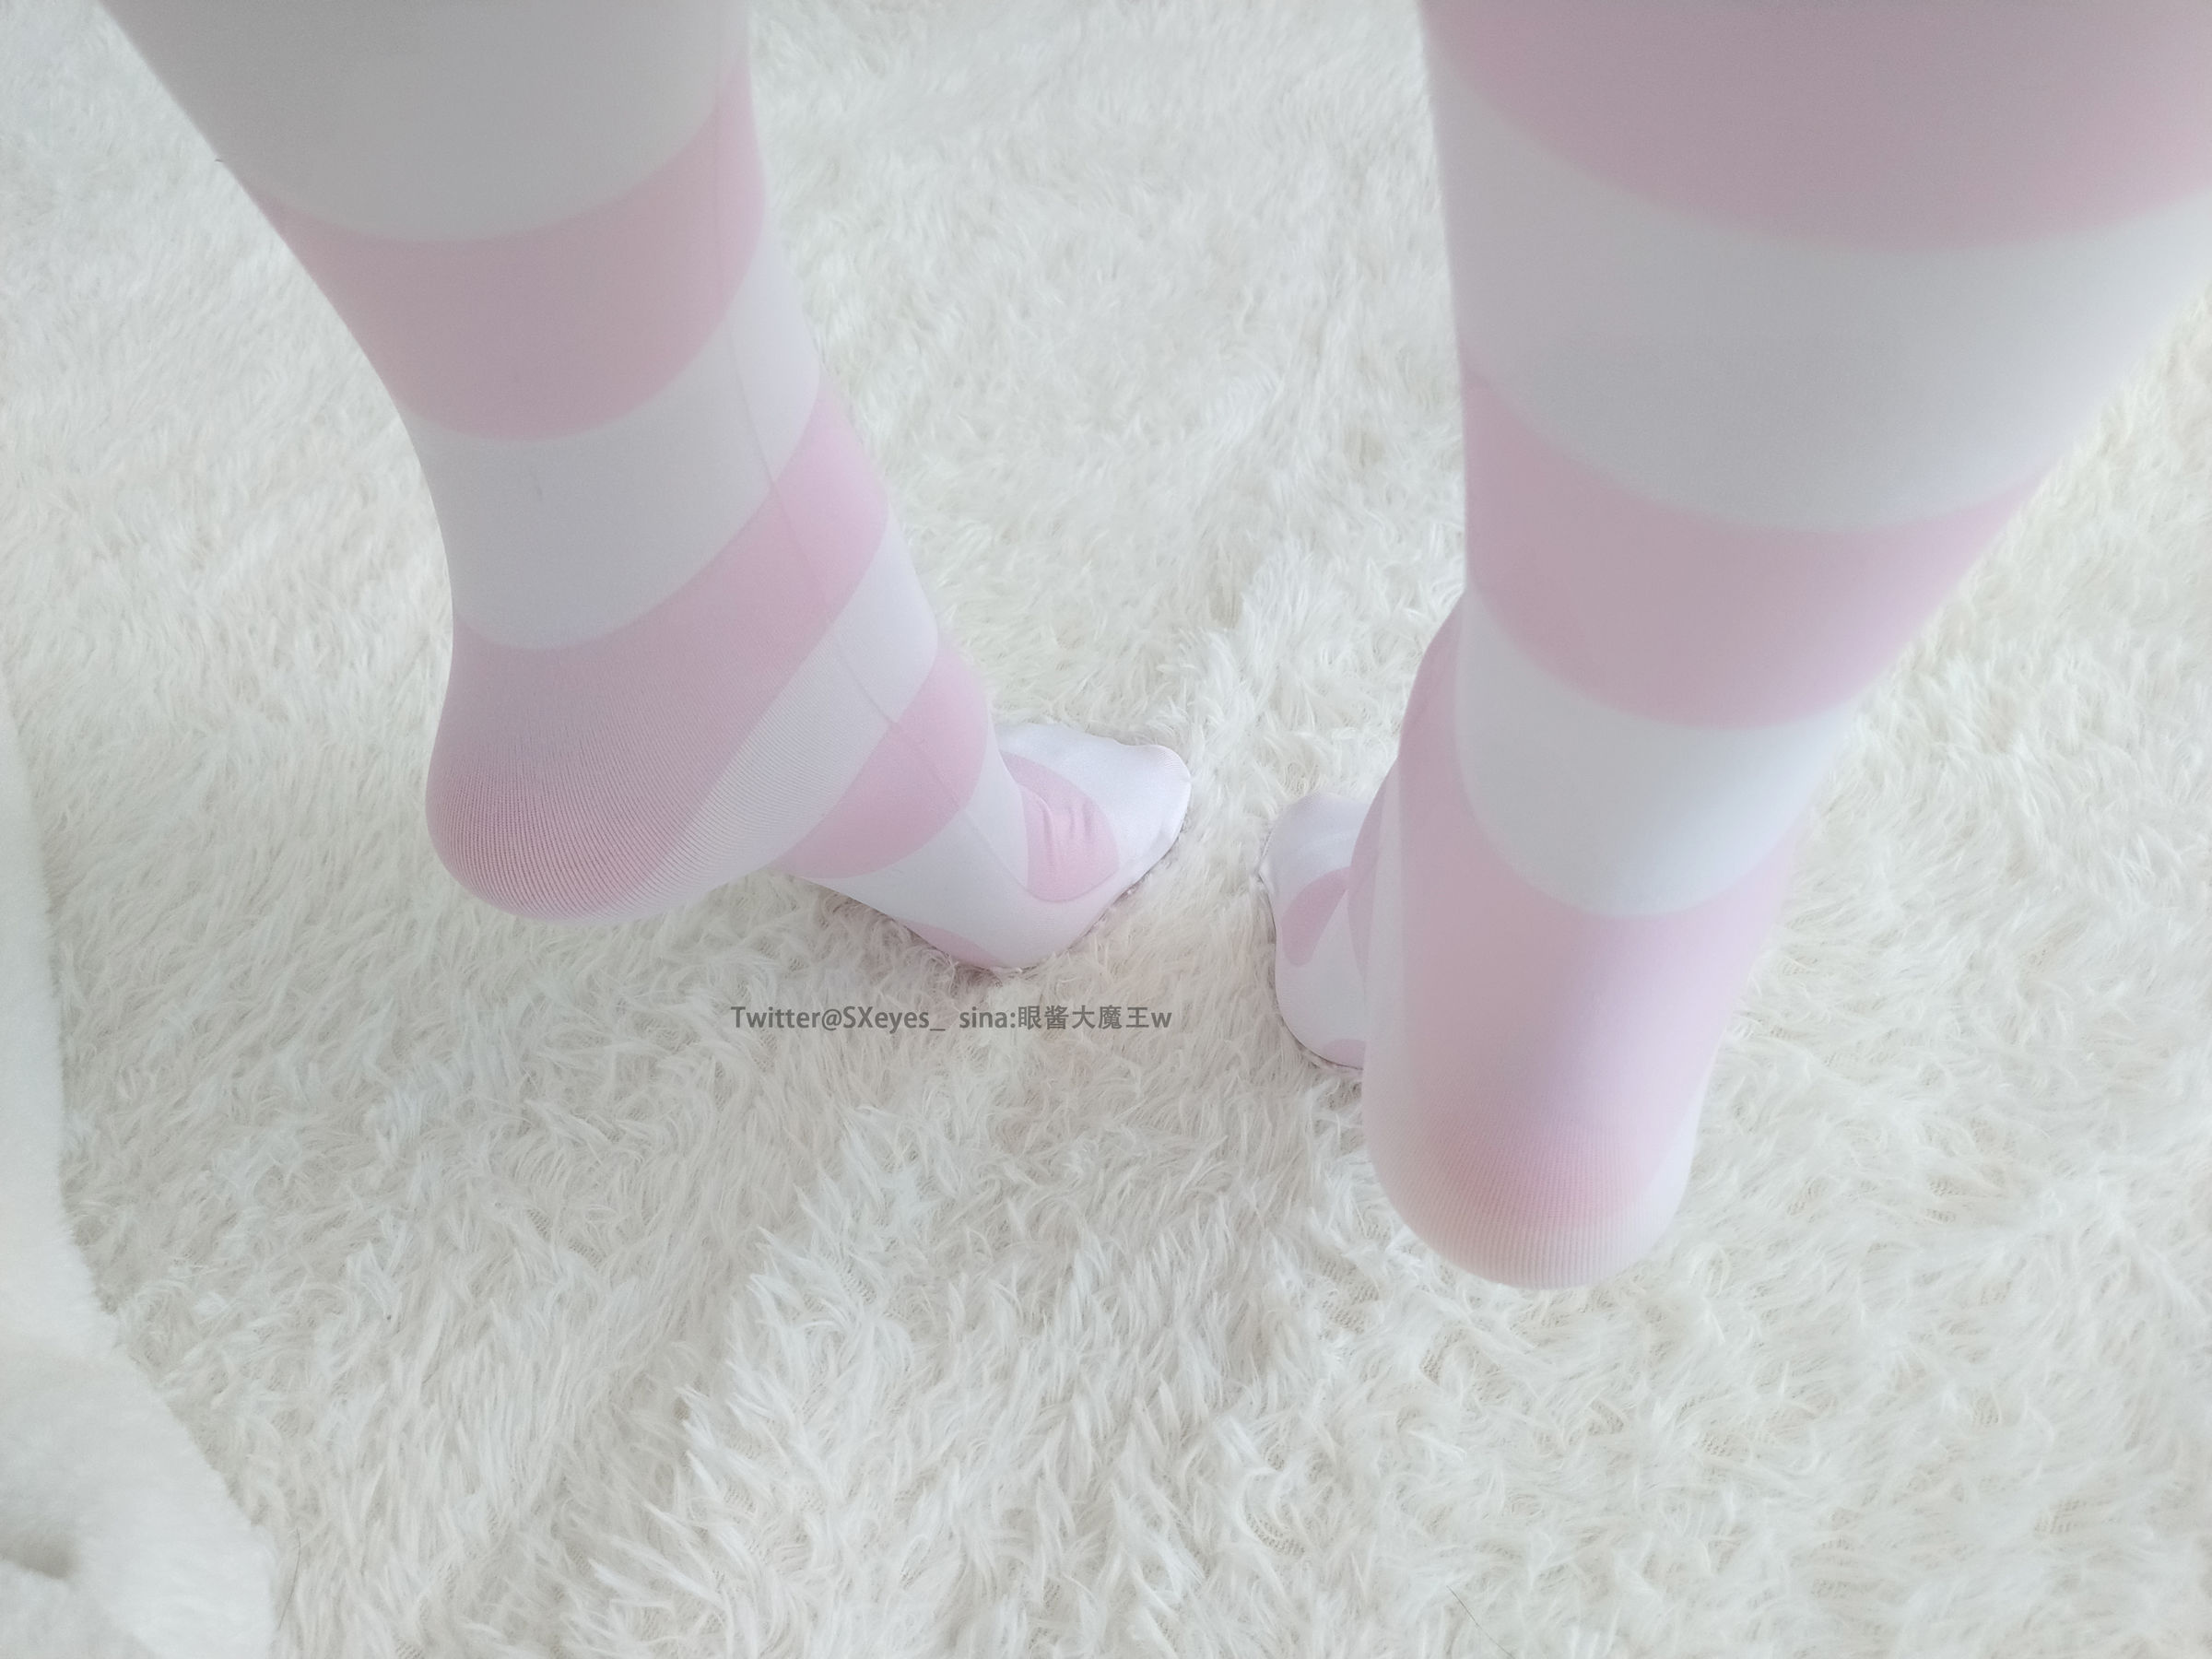 [COS福利] 萌妹子眼酱大魔王w - 粉色条纹袜